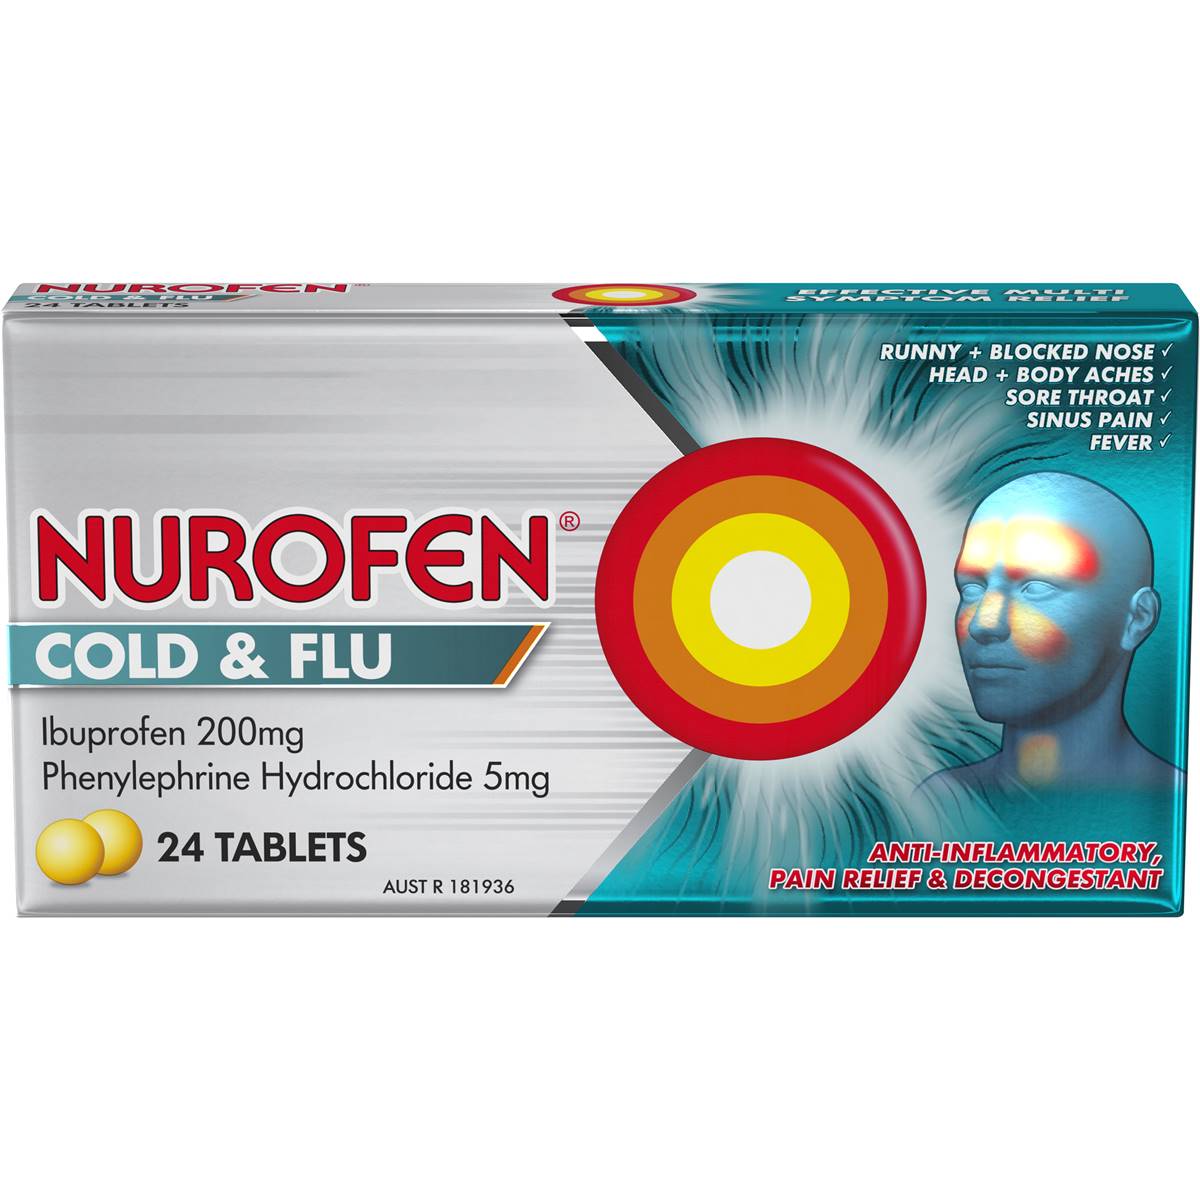 Nurofen Cold & Flu Pe Tablets